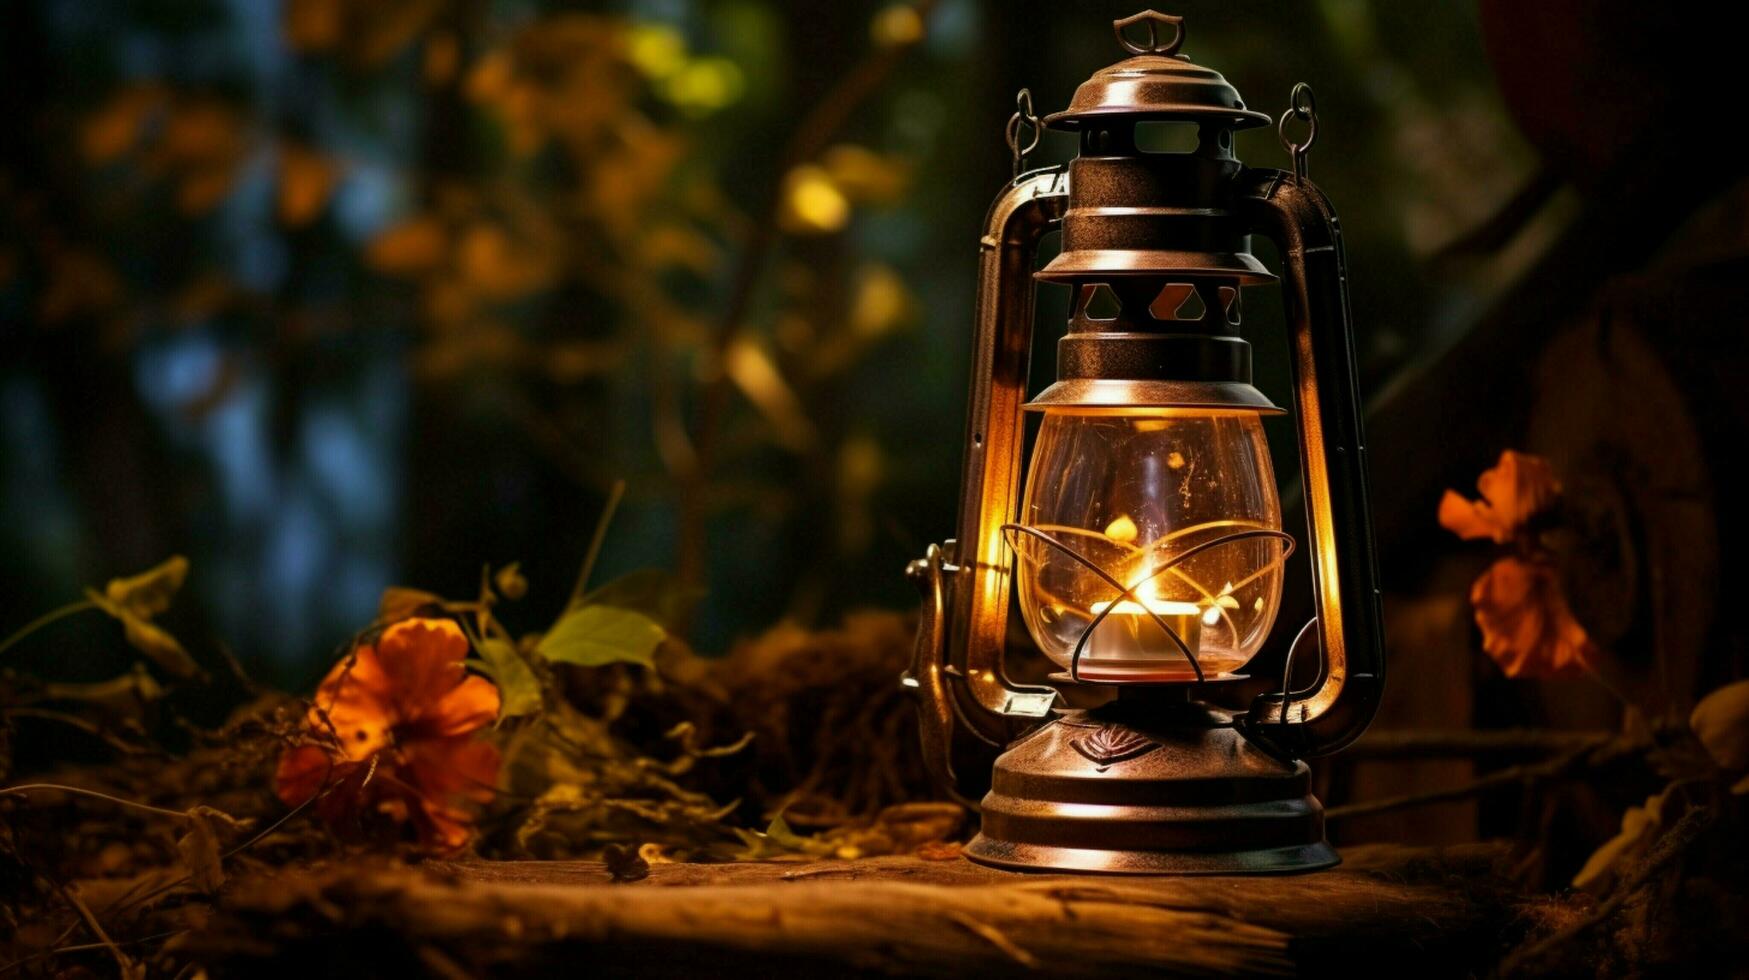 Antiguidade lanterna brilhando com querosene chama ao ar livre foto